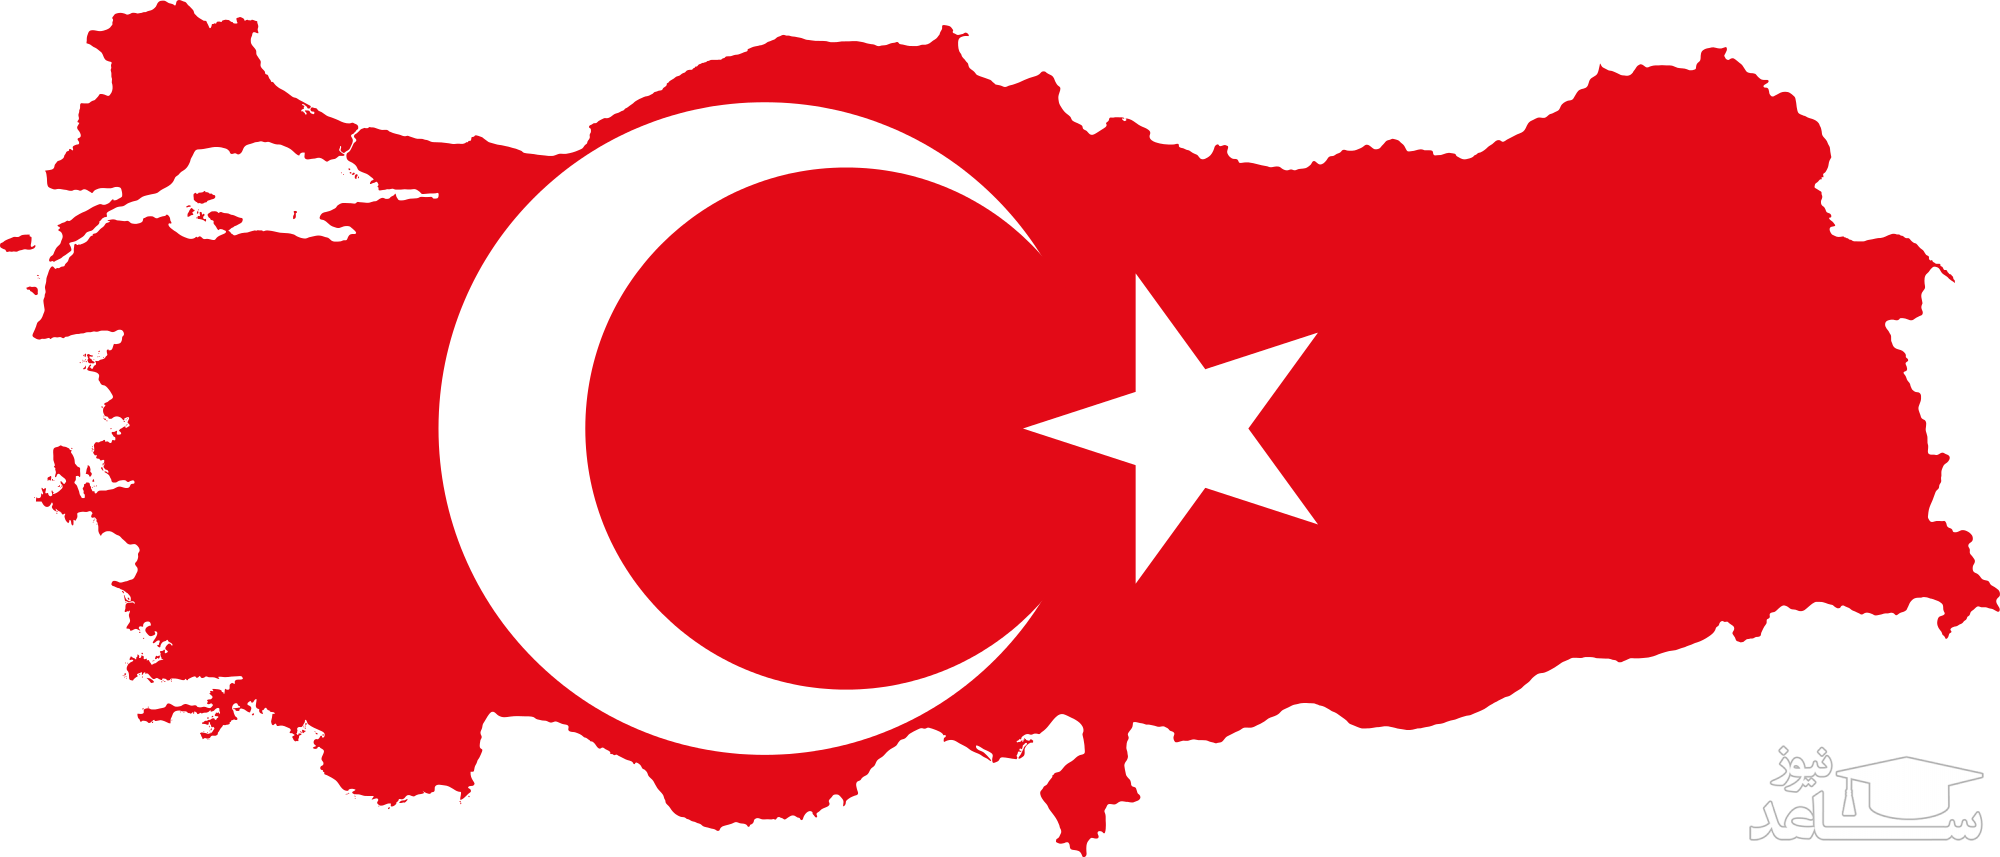 تعلیق رسمی مذاکرات با ترکیه برای پیوستن این کشور به اتحادیه اروپا